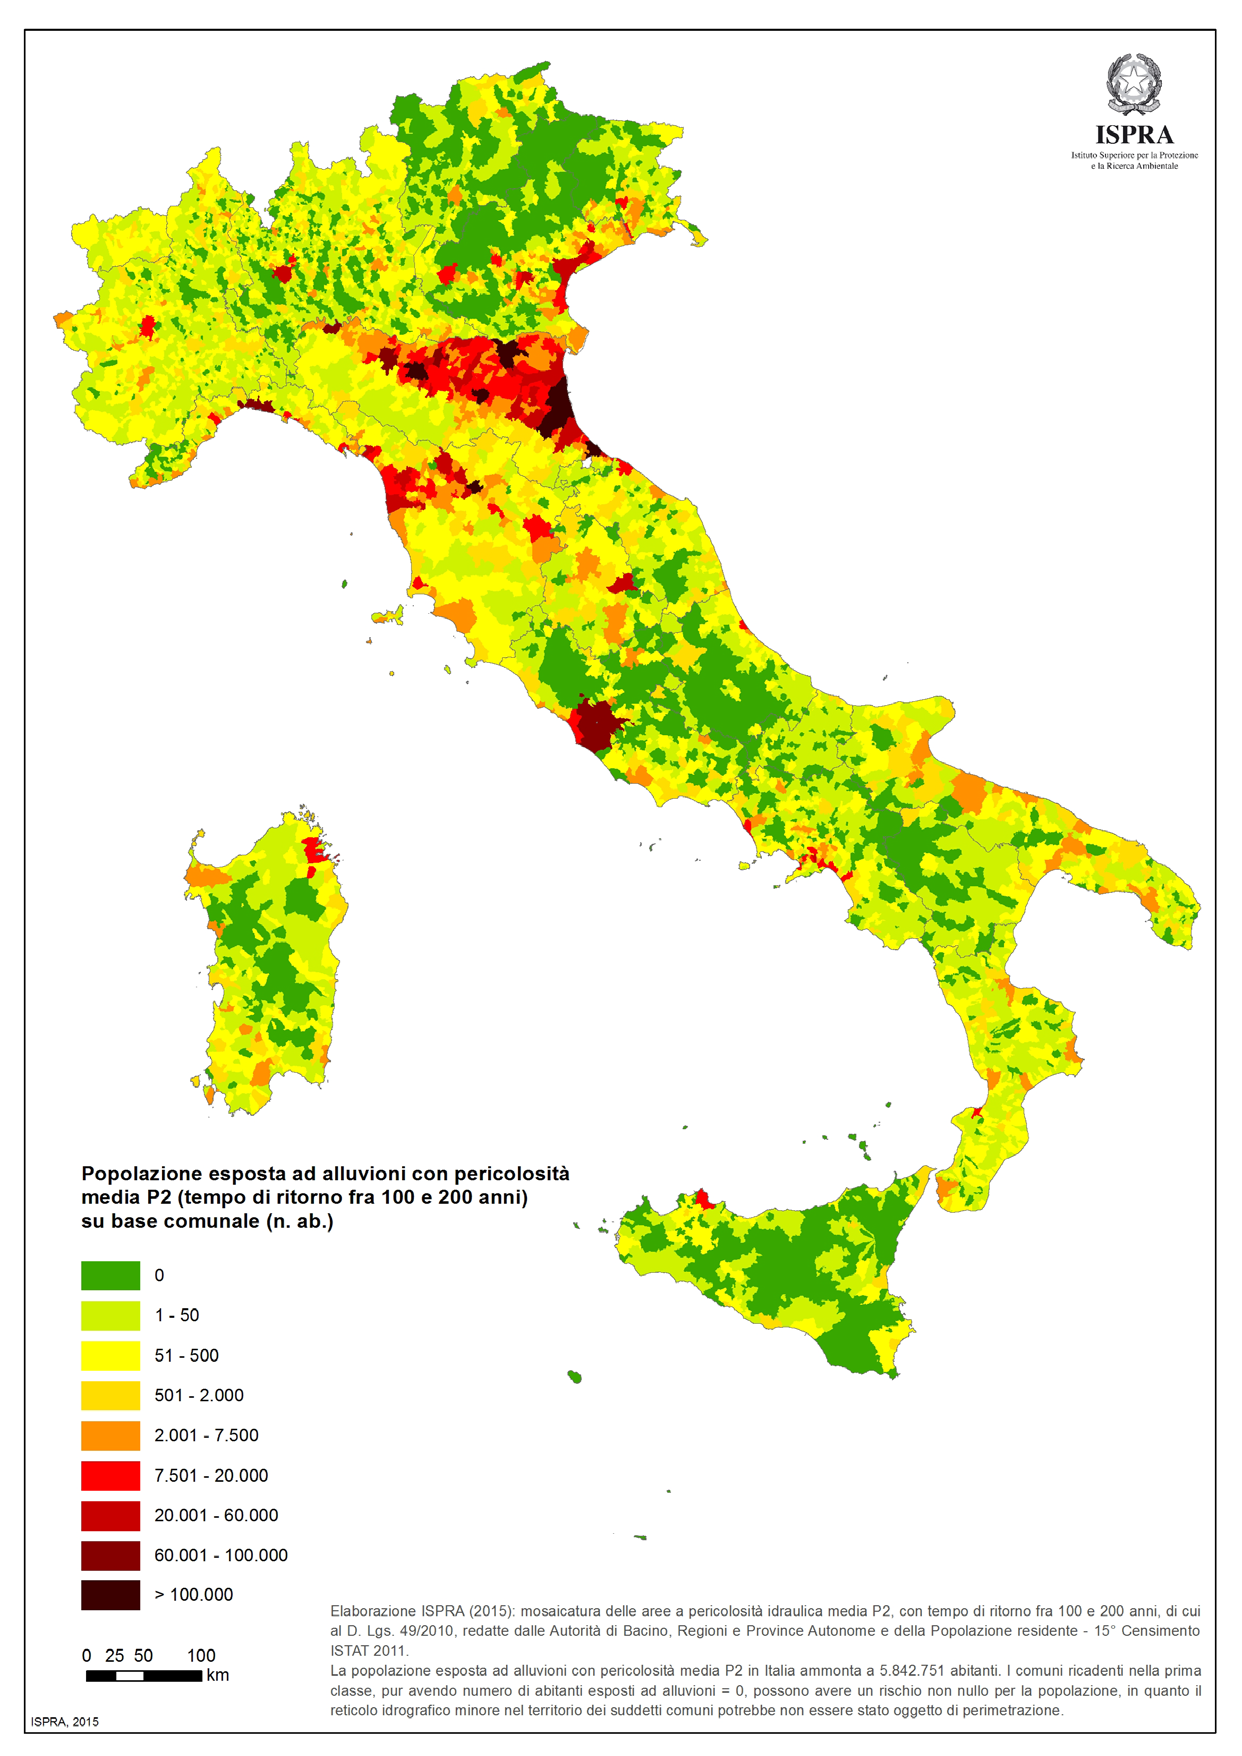 2.2 Popolazione esposta ad alluvioni La stima della popolazione esposta ad alluvioni è stata effettuata utilizzando come dati di input la mosaicatura delle aree a pericolosità idraulica elevata (P3)